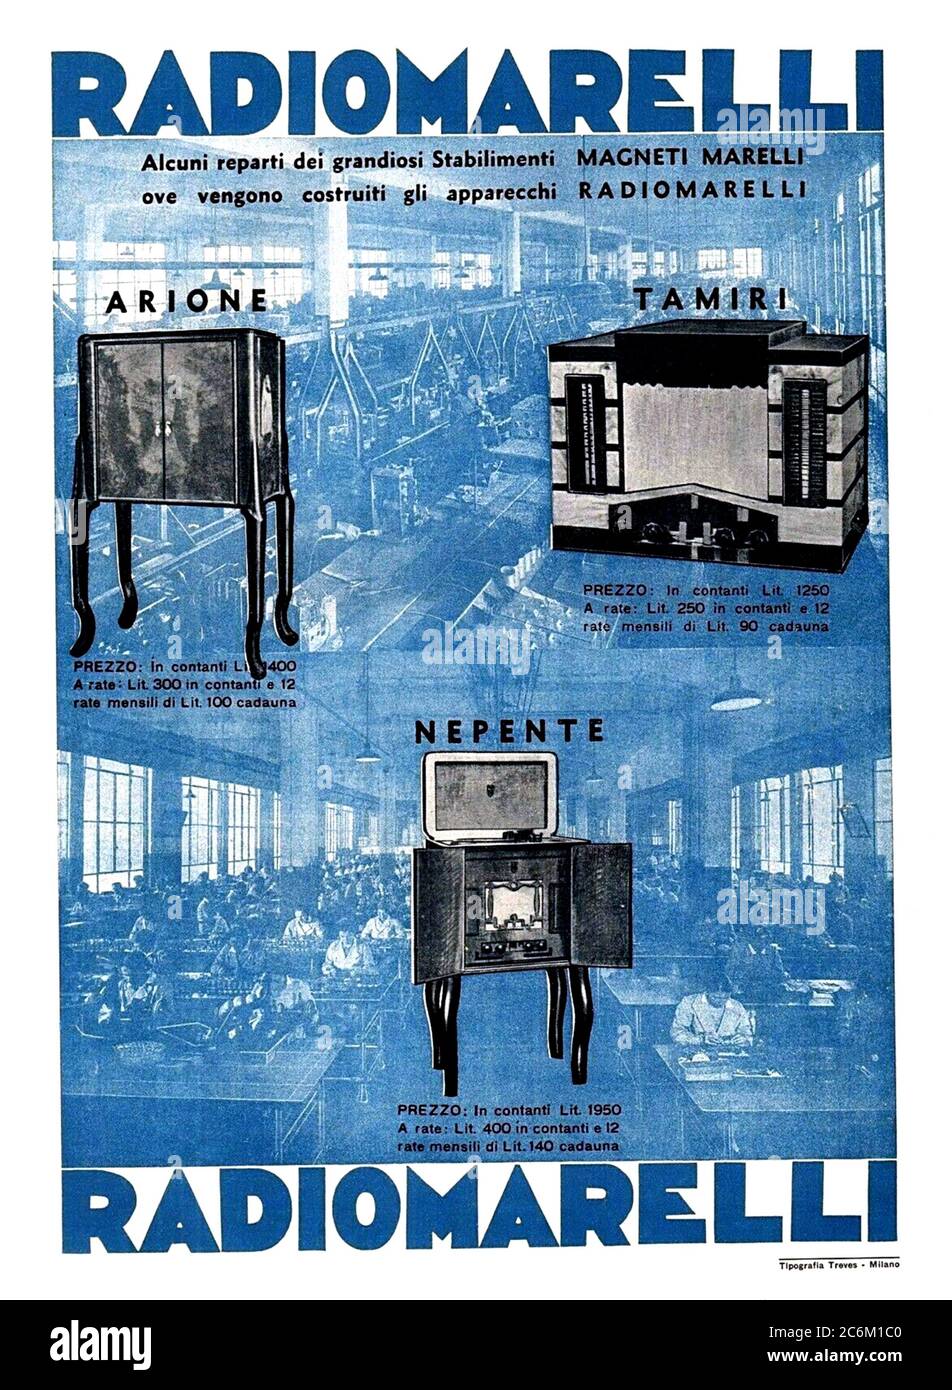 1935, ITALIA: Pubblicità per RADIOMARELLI dello stabilimento di MARELLI, Milano. La fabbrica è stata aperta nel 1929 dall'industria automobilistica GIOVANNI AGNELLI e Bruno Quintavalle (presidente di ERCOLE MARELLI ), chiusa nel 1975 . - APPARECCHIO RADIO - RADIO TRASISSIONI RADIOFONICHE - FOTO STORICHE - MAGNETIMARELLI - MAGNETI MARELLI - STORIA - EIAR ( ENTE ITALIANO AUDIZIONI RADIOFONICHE ) - RADIOFONIA - TRASISSIONI RADIOFONICHE - GRAFICA - ART DECO - NOVECENTO - NOVECENTO - '900 - XX SECOLO - ANNI TRENTA - '30 - locandina inserzione pubblicitaria - POSTER - pubblicità - pubblicità - manifesto publicitaria Foto Stock